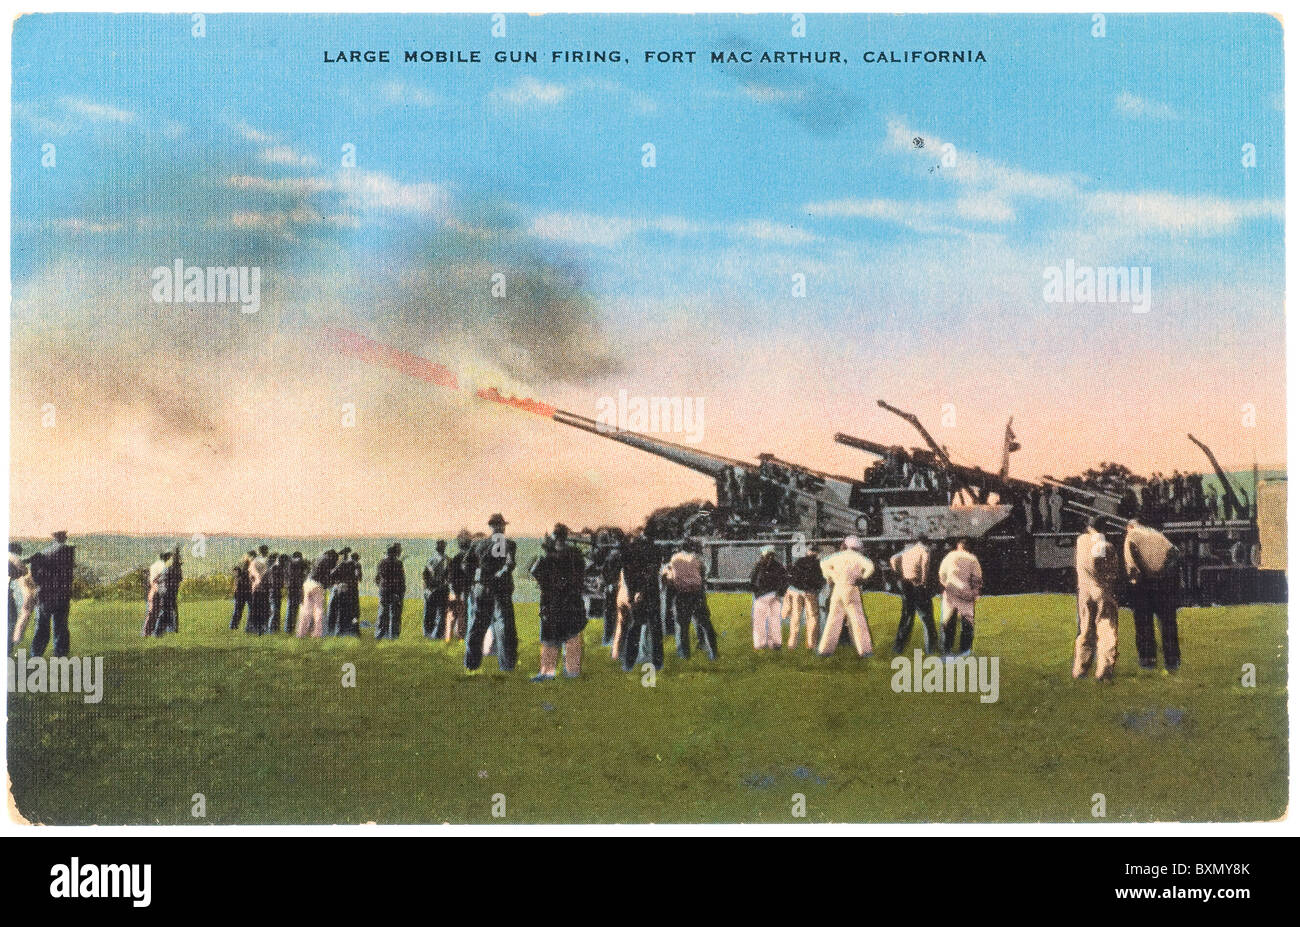 Carte postale de gros tir de canon mobile à Fort Mac Arthur, en Californie Banque D'Images